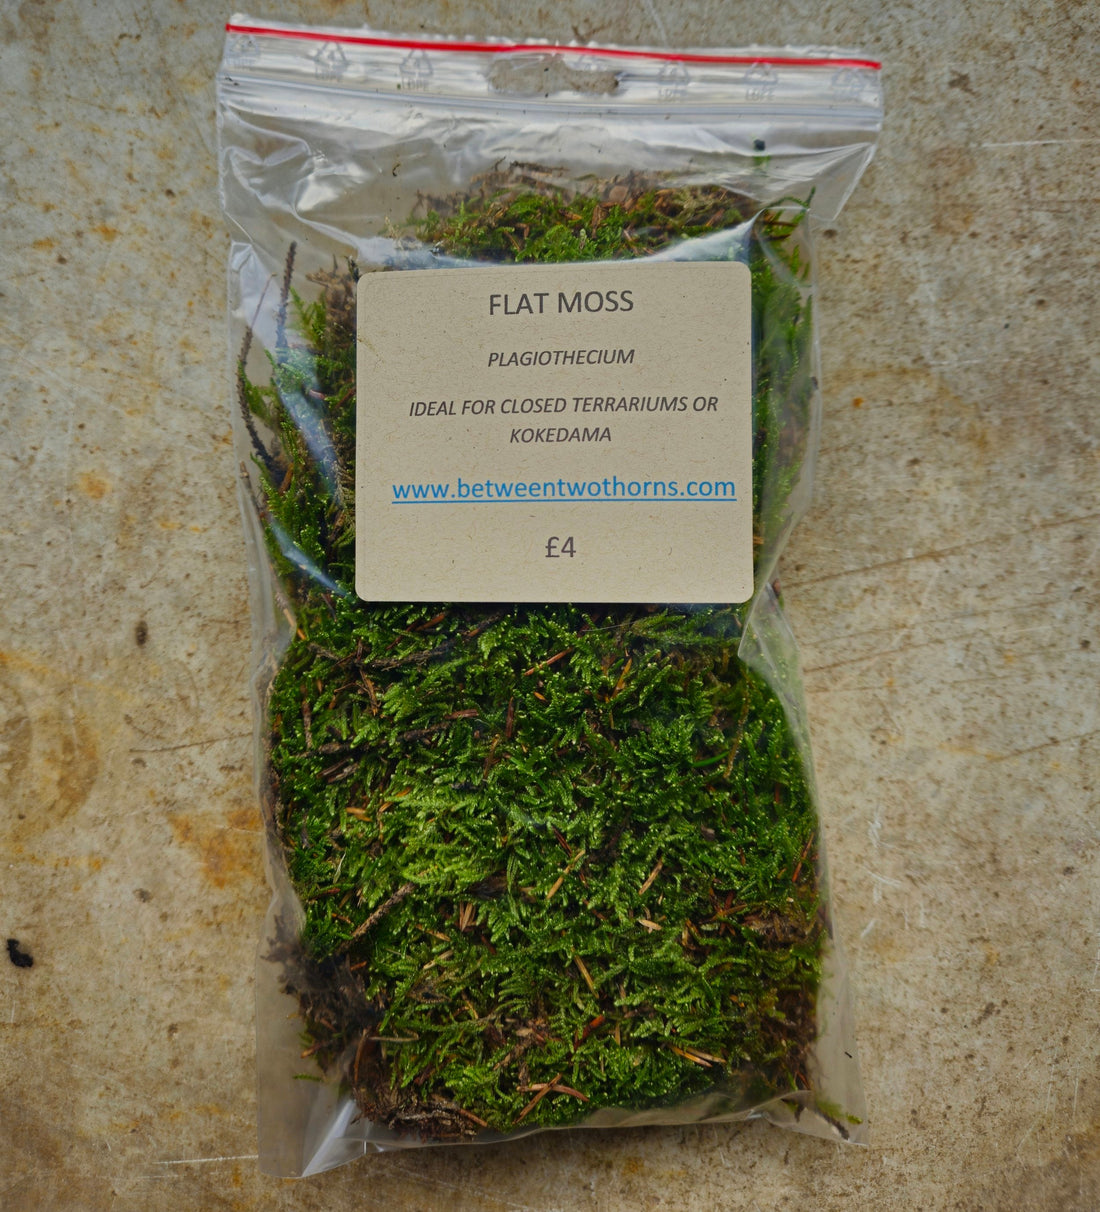 Plagiothecium (Flat moss)